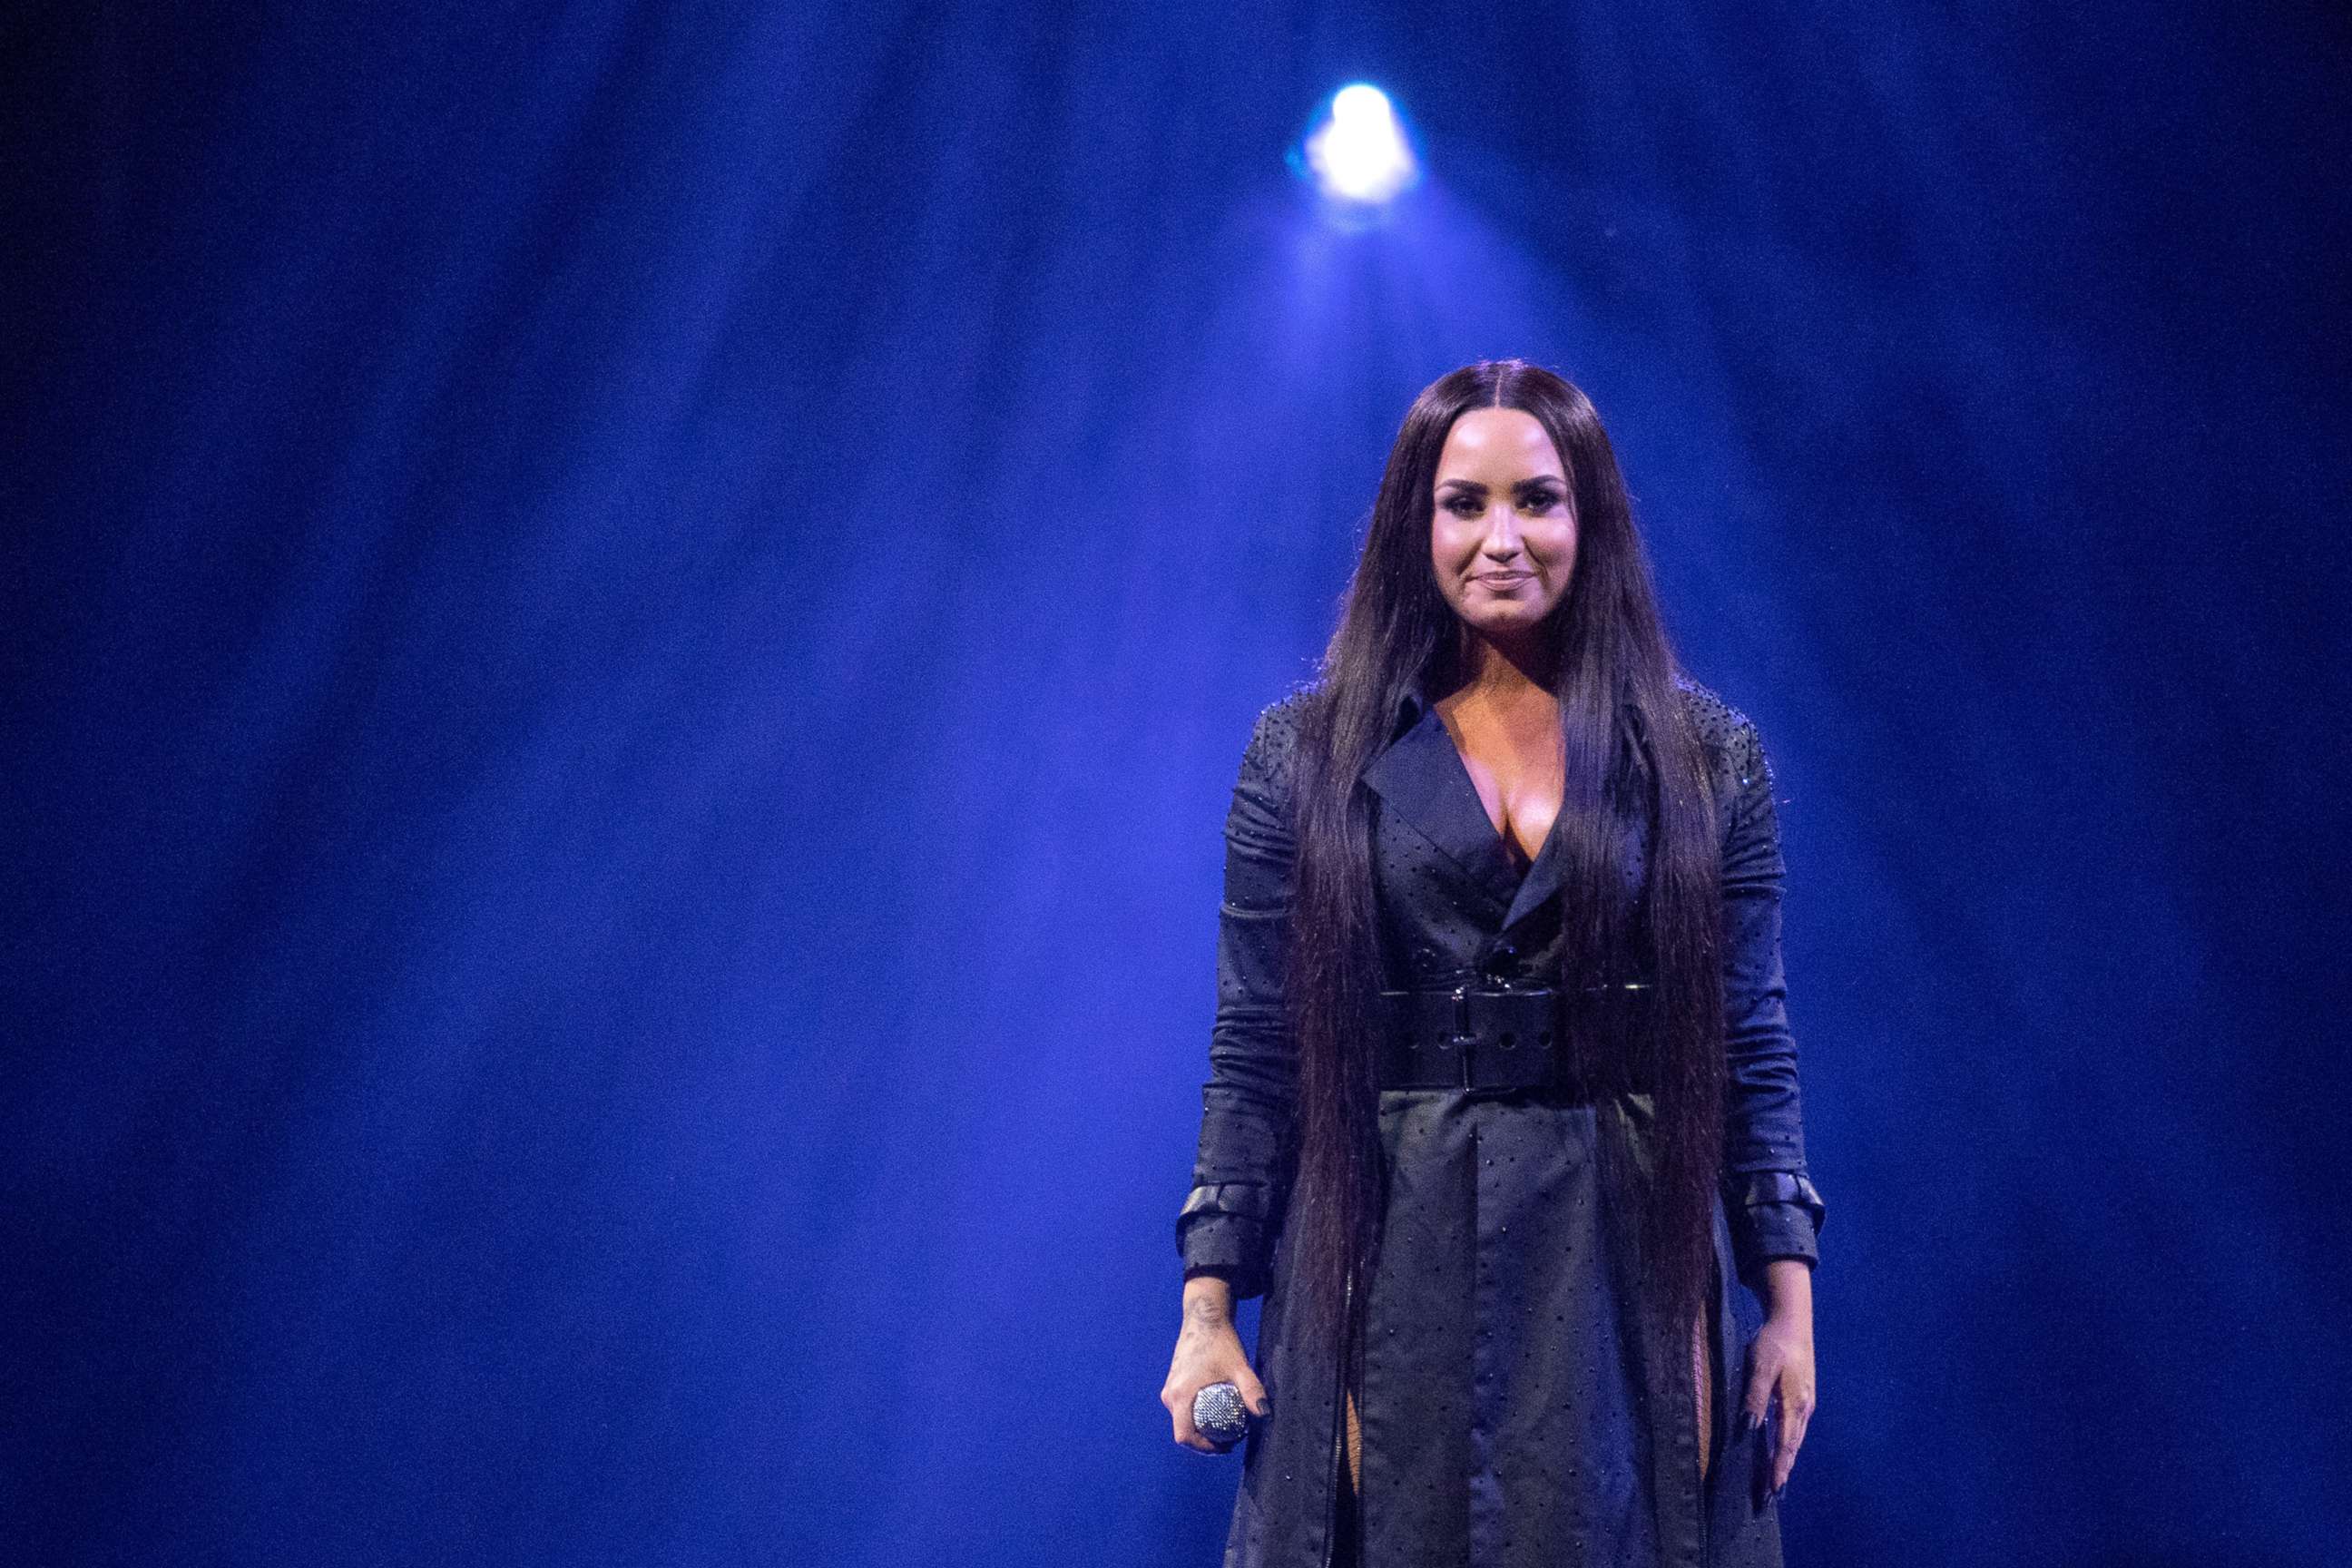 PHOTO: Demi Lovato performs, June 13, 2018 in Glasgow, Scotland.